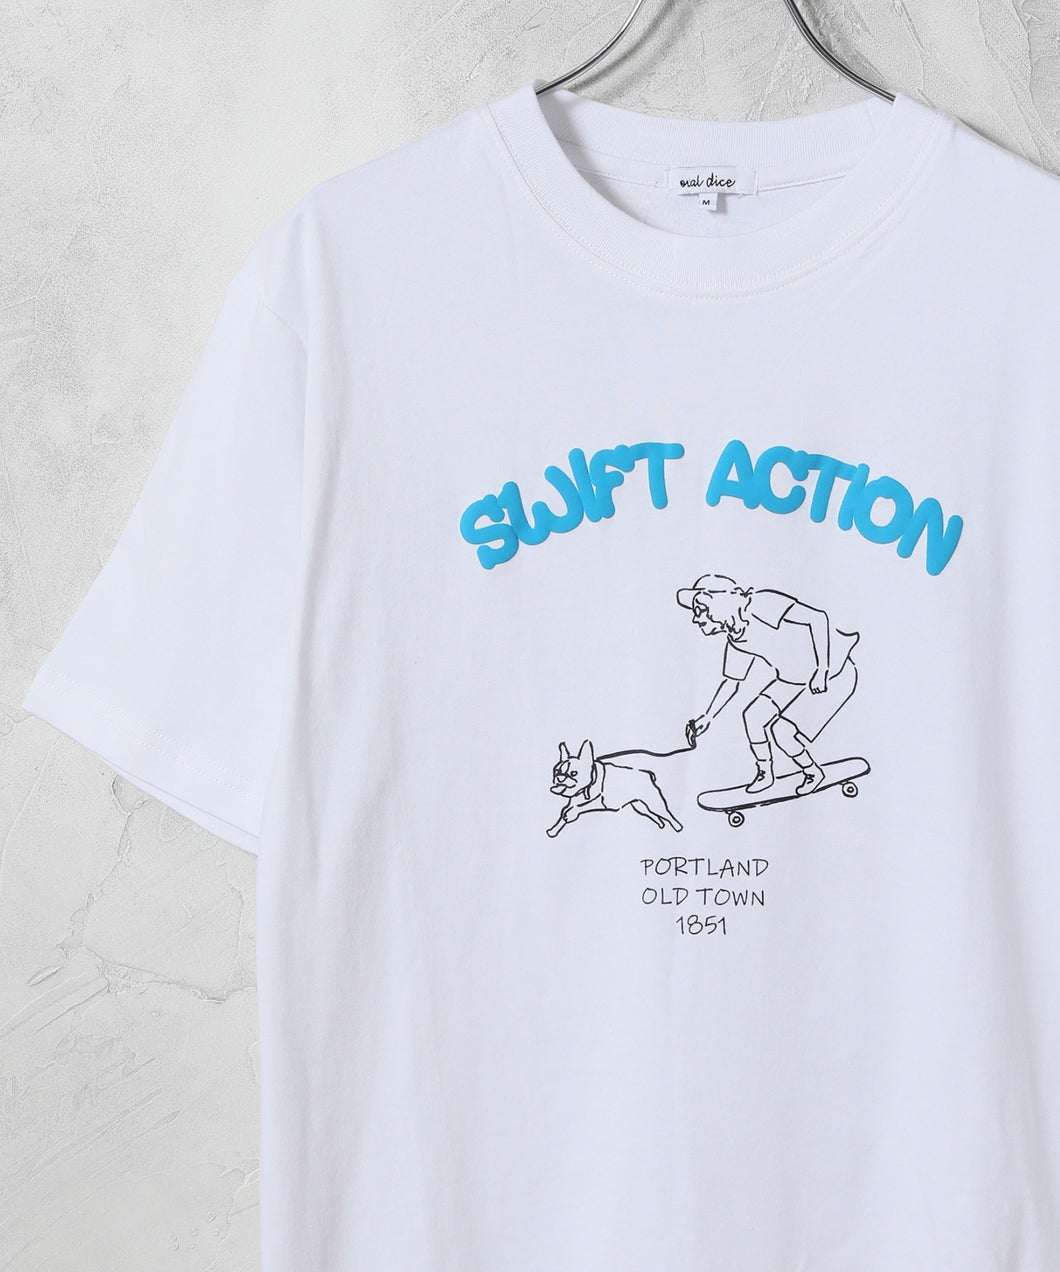 【OVAL DICE/オーバルダイス】ロゴアートワークプリントTシャツ(SWIFT ACTION)